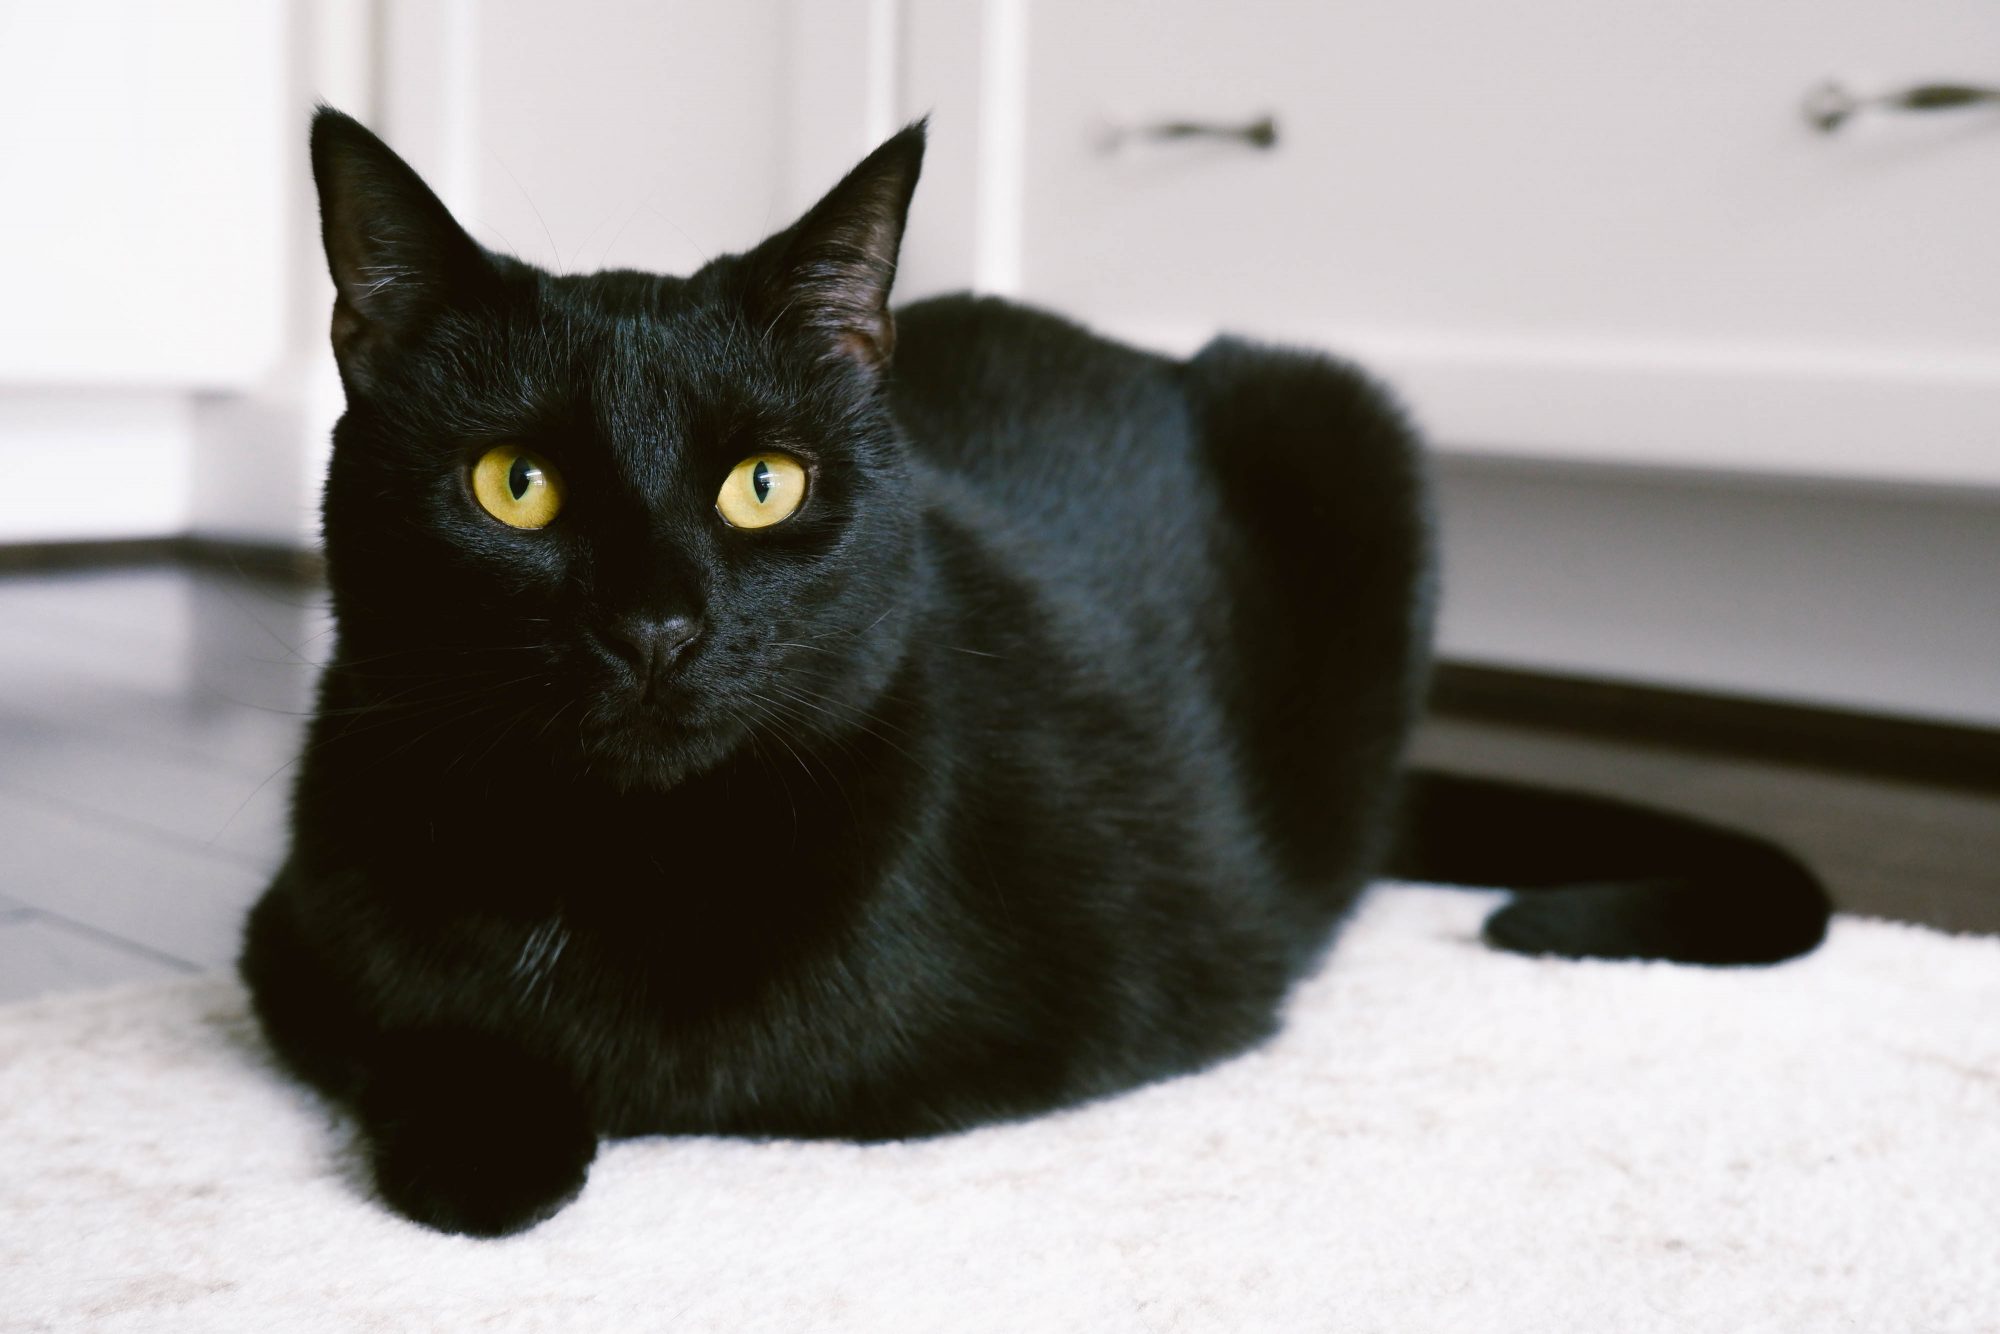 Mèo đen: Mèo đen luôn là một chủ đề thú vị để khám phá và tìm hiểu. Hãy cùng khám phá những bức ảnh đẹp của những chú mèo đen xinh đẹp trong suốt cuộc hành trình của chúng.